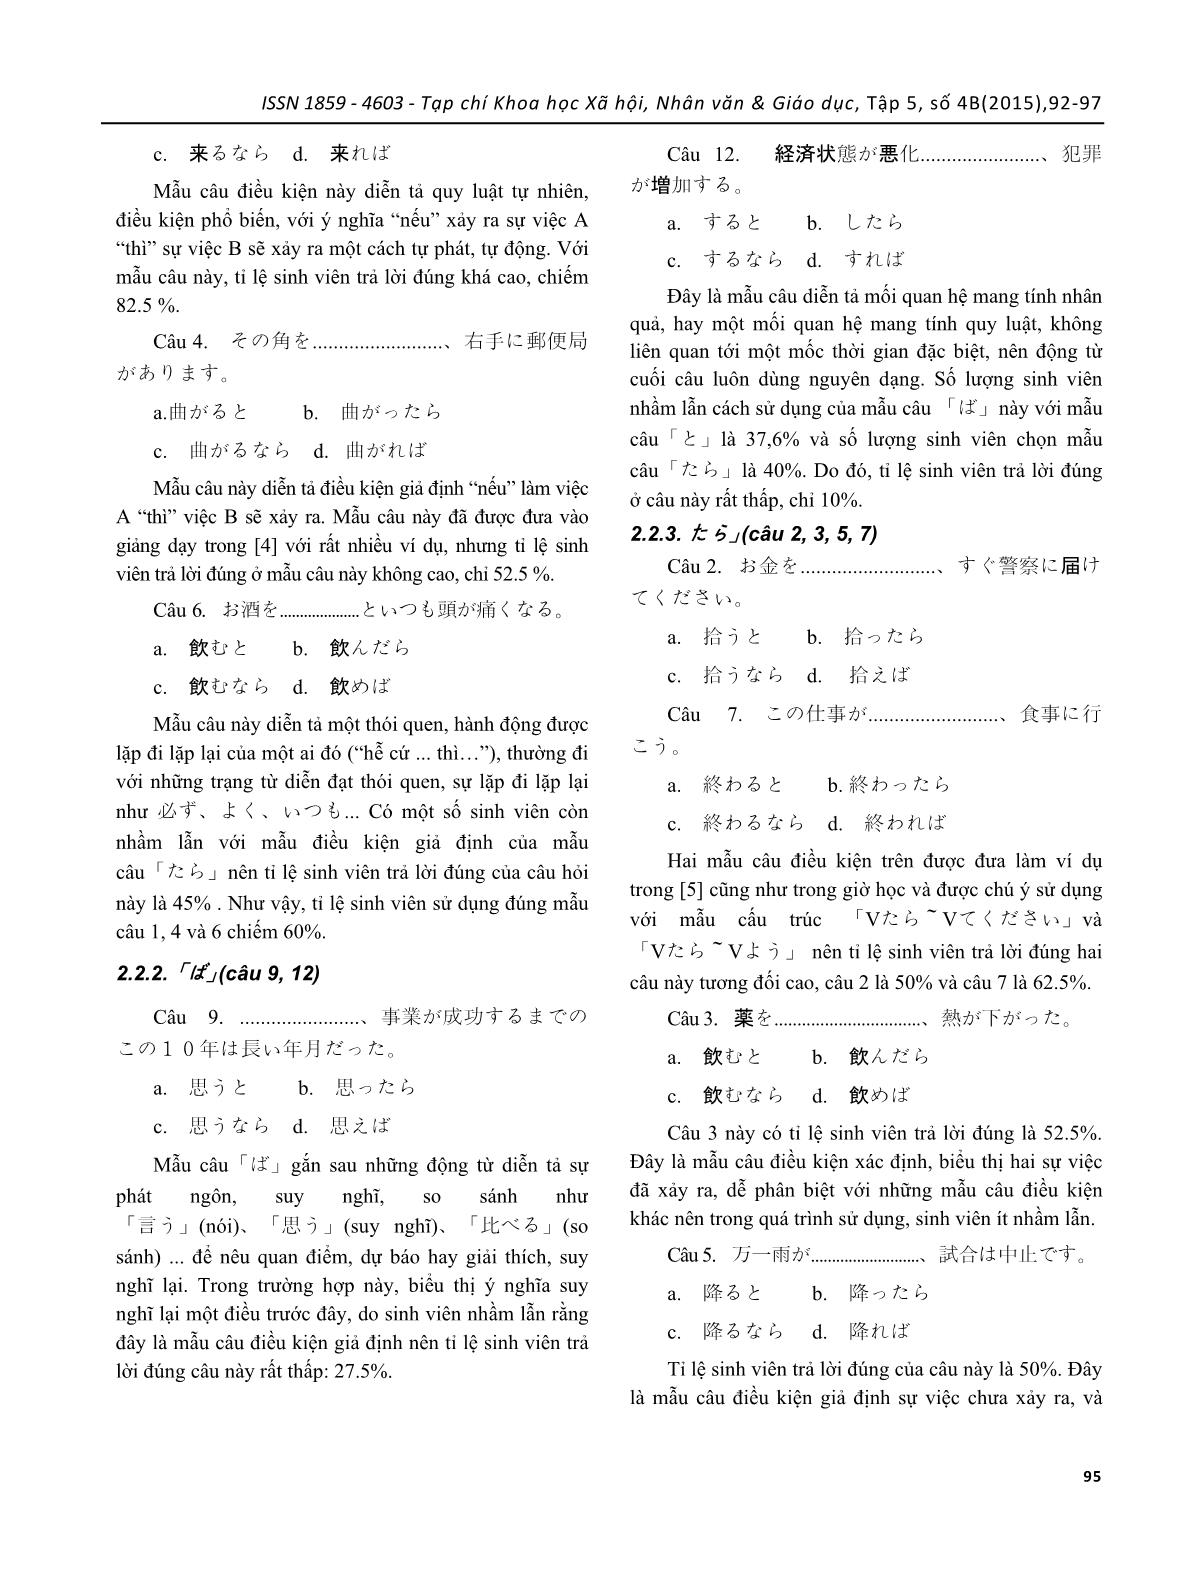 Khảo sát lỗi thường gặp của sinh viên tiếng Nhật sử dụng câu điều kiện “to”, “tara”, “nara”, “ba” và biện pháp khắc phục trang 4